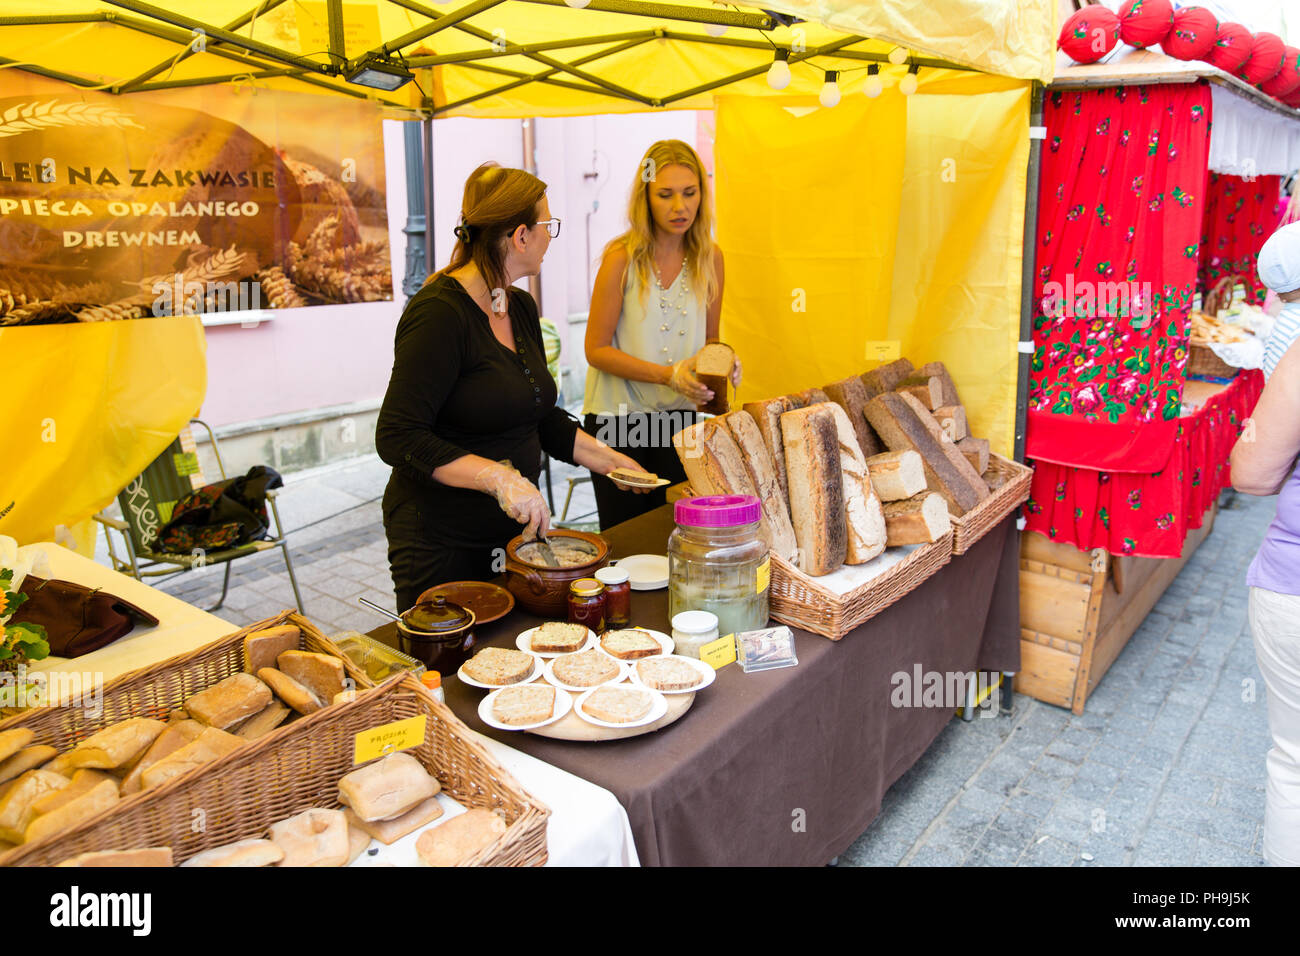 Encore marché proposant des sandwiches pain biologique et de saindoux avec concombres au marché de rue à Krosno, Pologne Banque D'Images